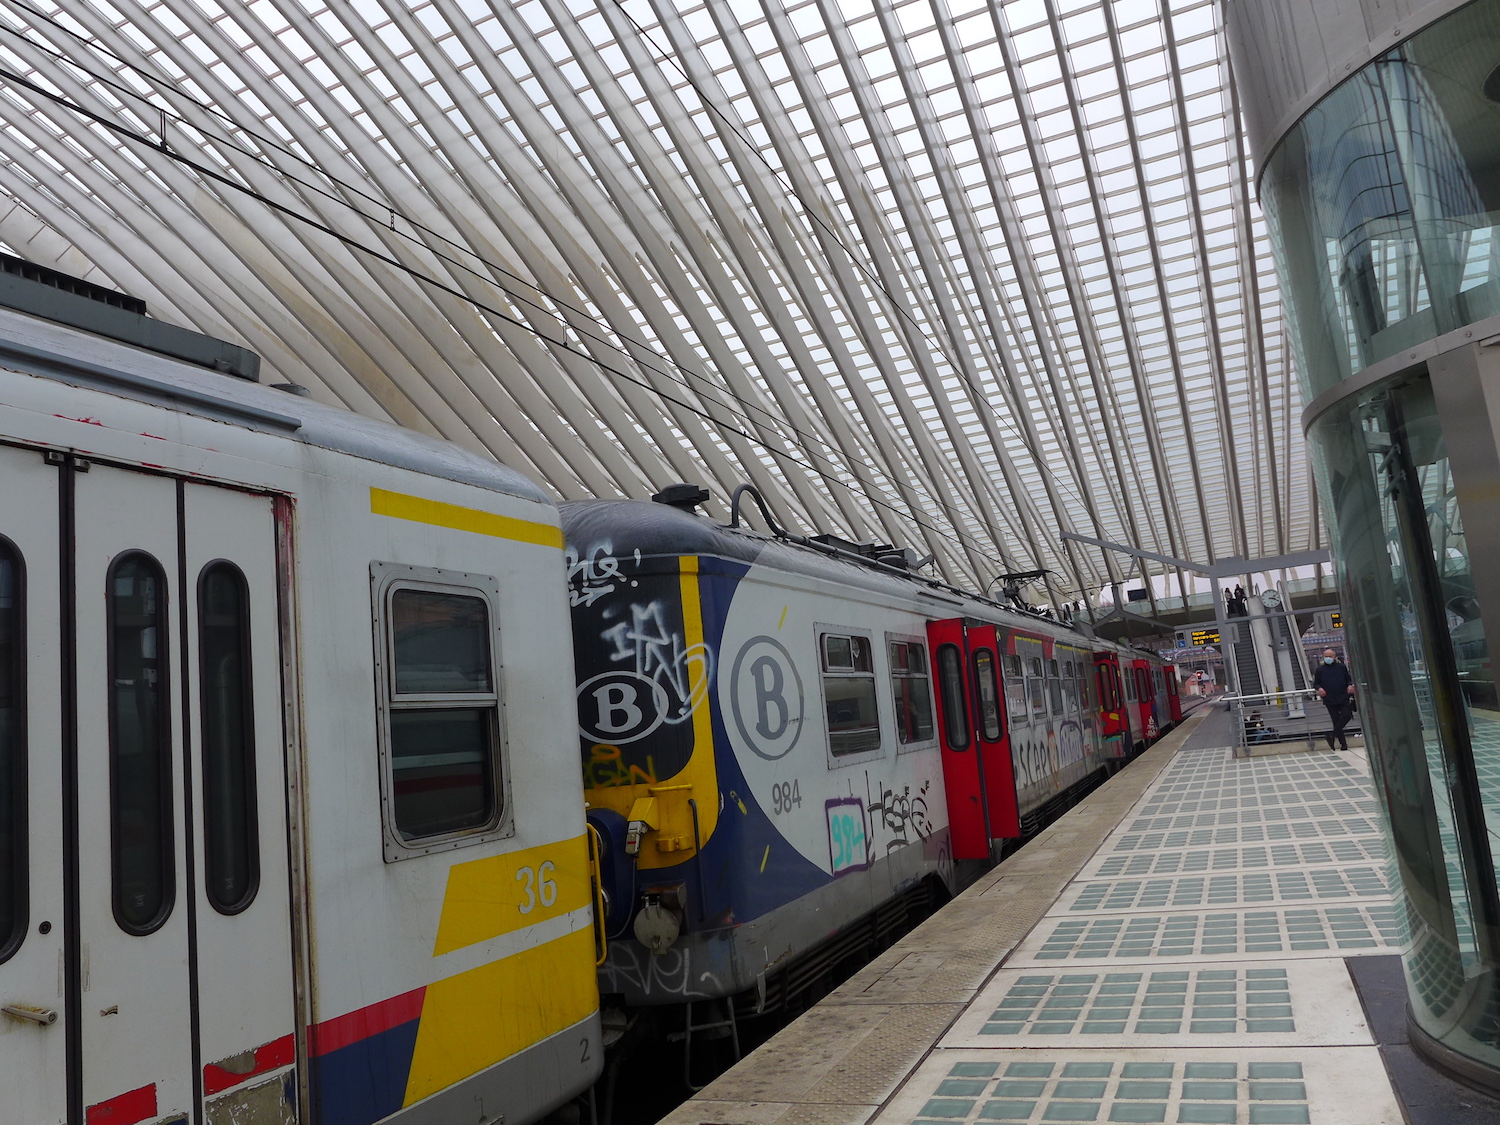 Notre correspondant en Belgique arrive à la gare de Liège, une gare aux allures futuristes © Globe Reporters